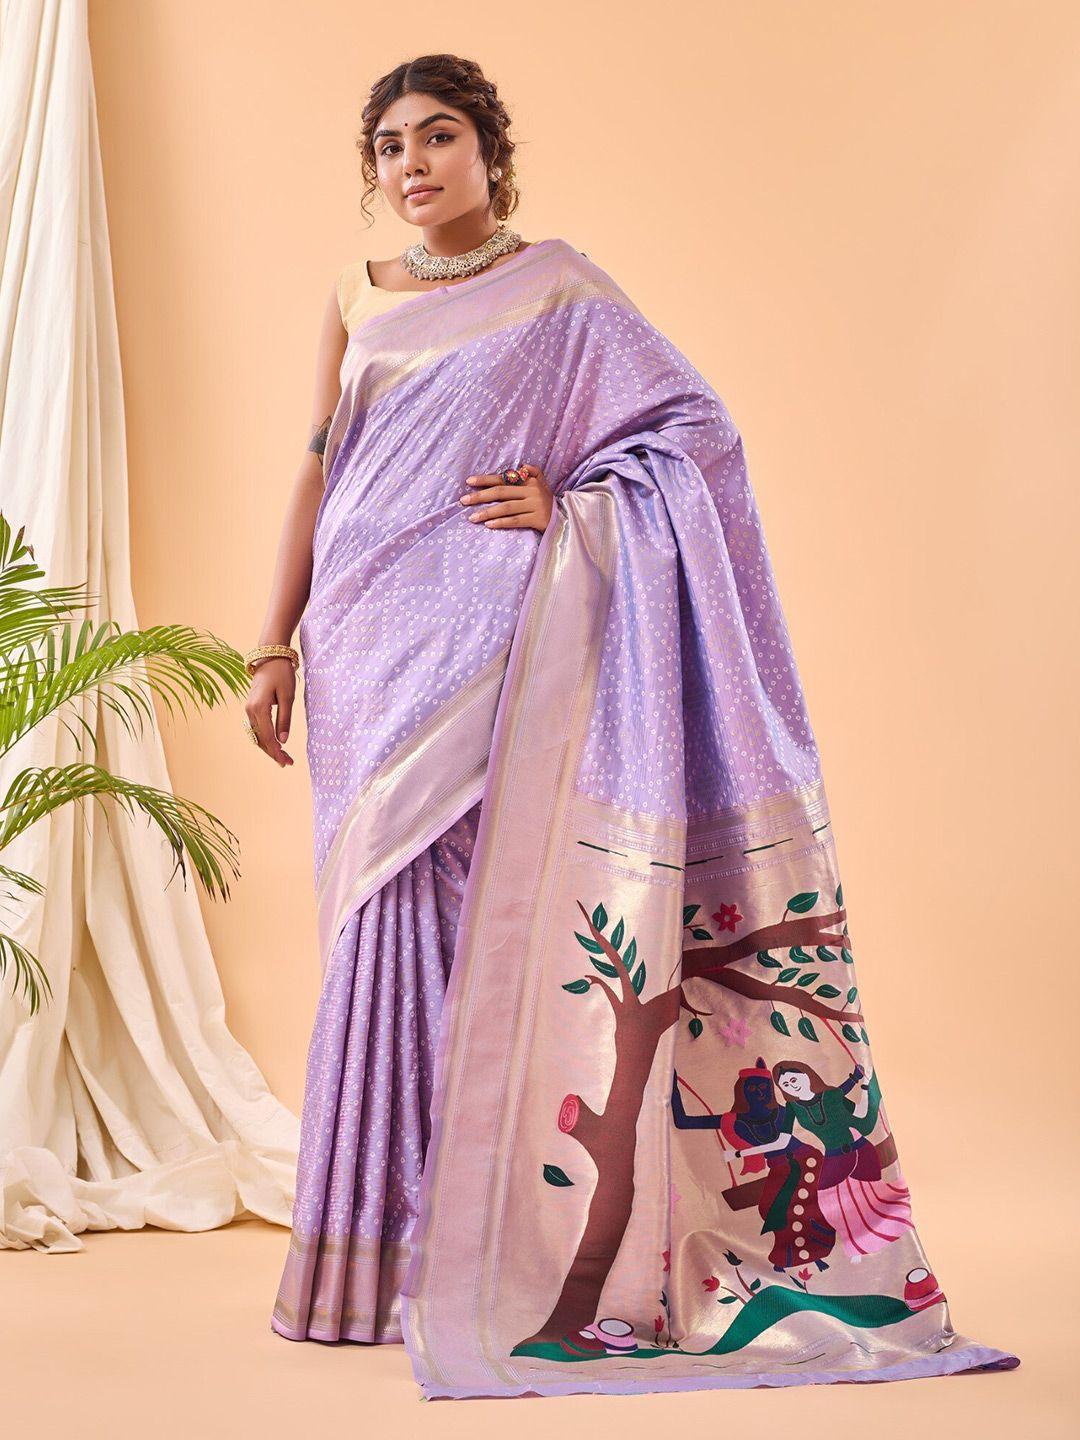 leelipeeri designer lavender & goldtoned ethnic woven design zari saree